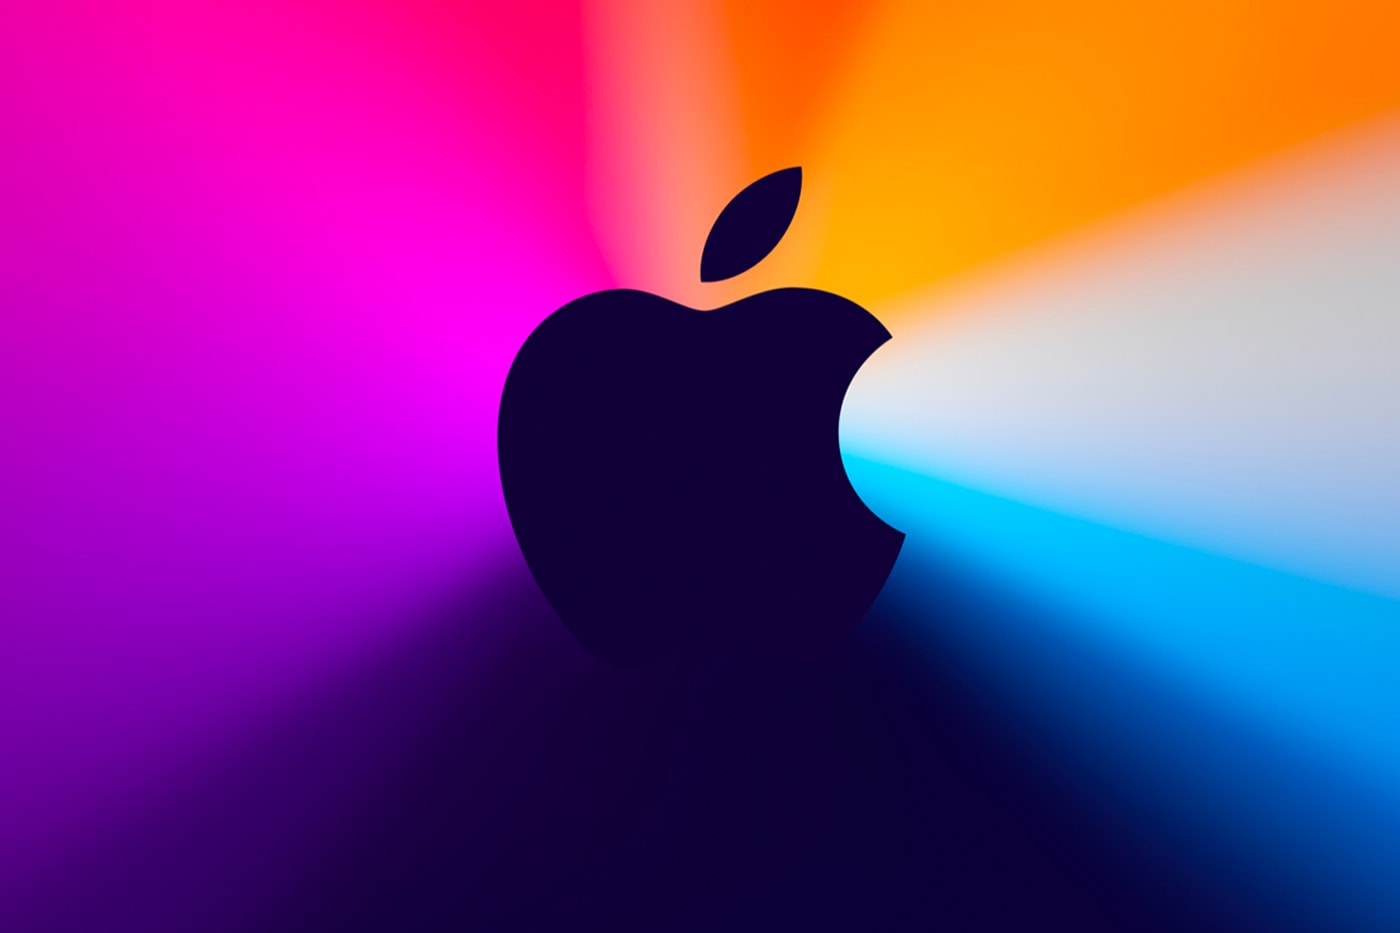 アップル Apple が新作発表イベントをオンラインで3月中に開催？ Rumored March Apple Introduce AirTags New iPads AirPods Info Date